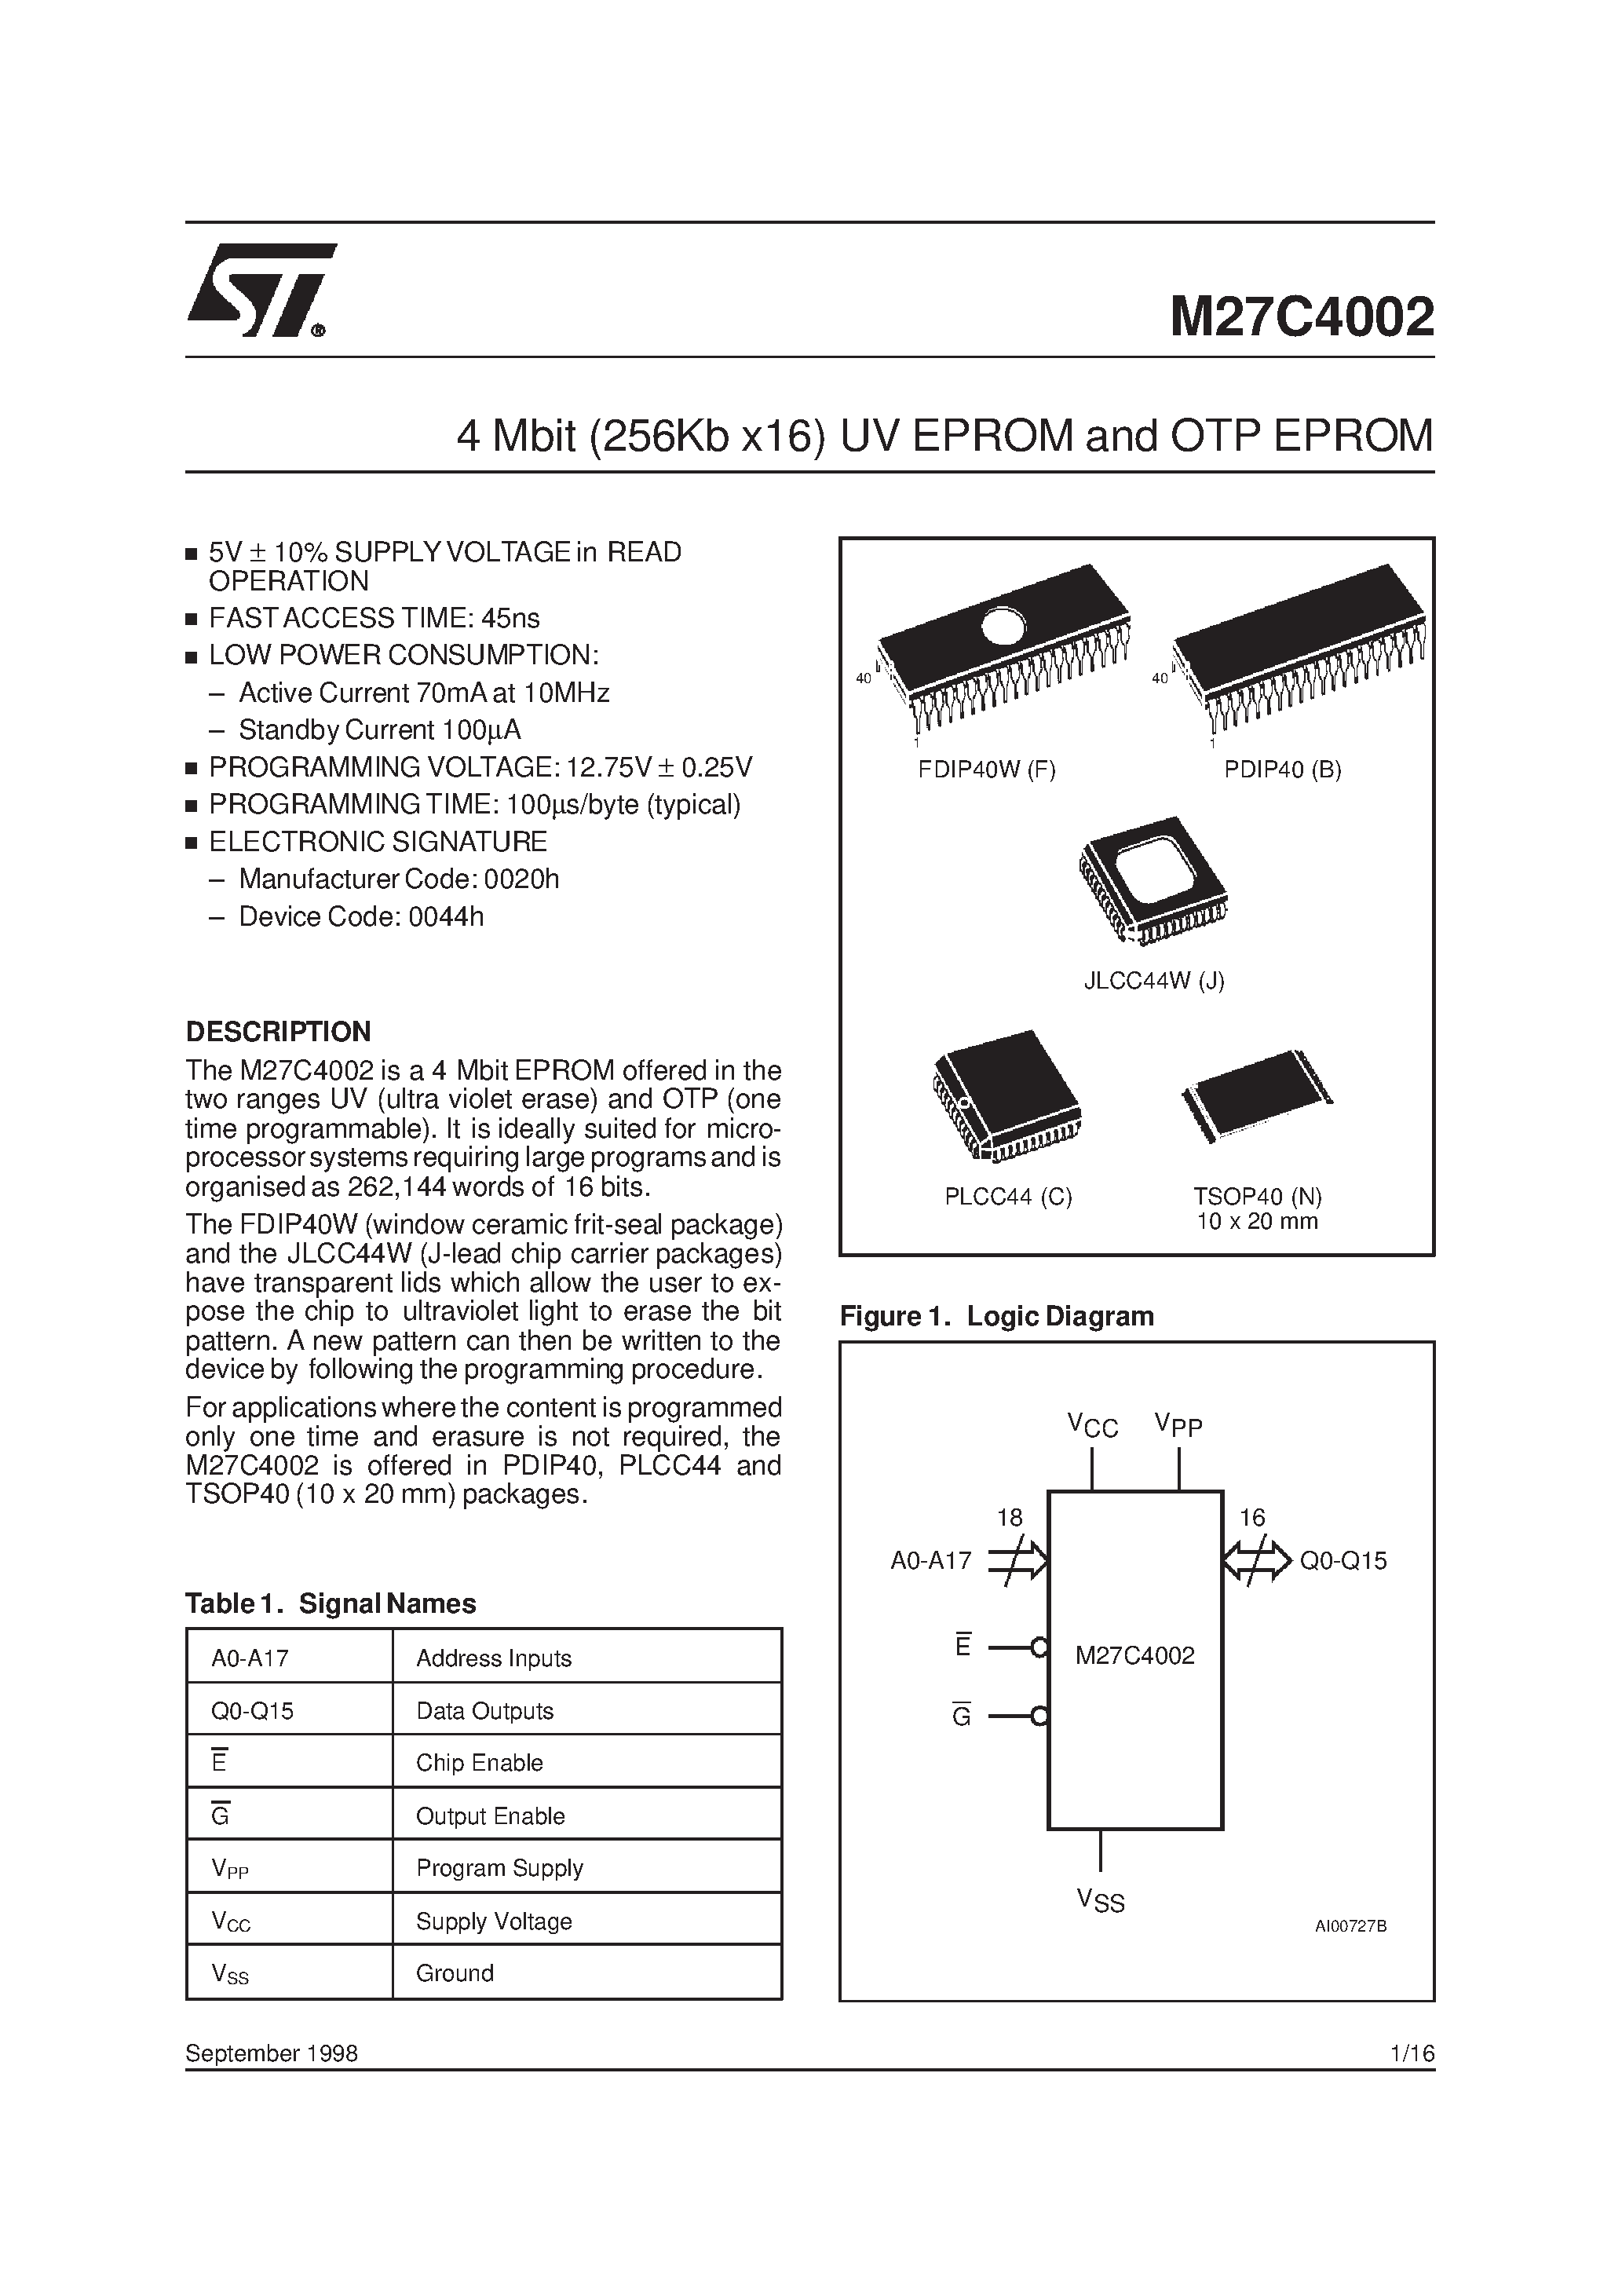 Datasheet M27C4002-10XC1X - 4 Mbit 256Kb x16 UV EPROM and OTP EPROM page 1